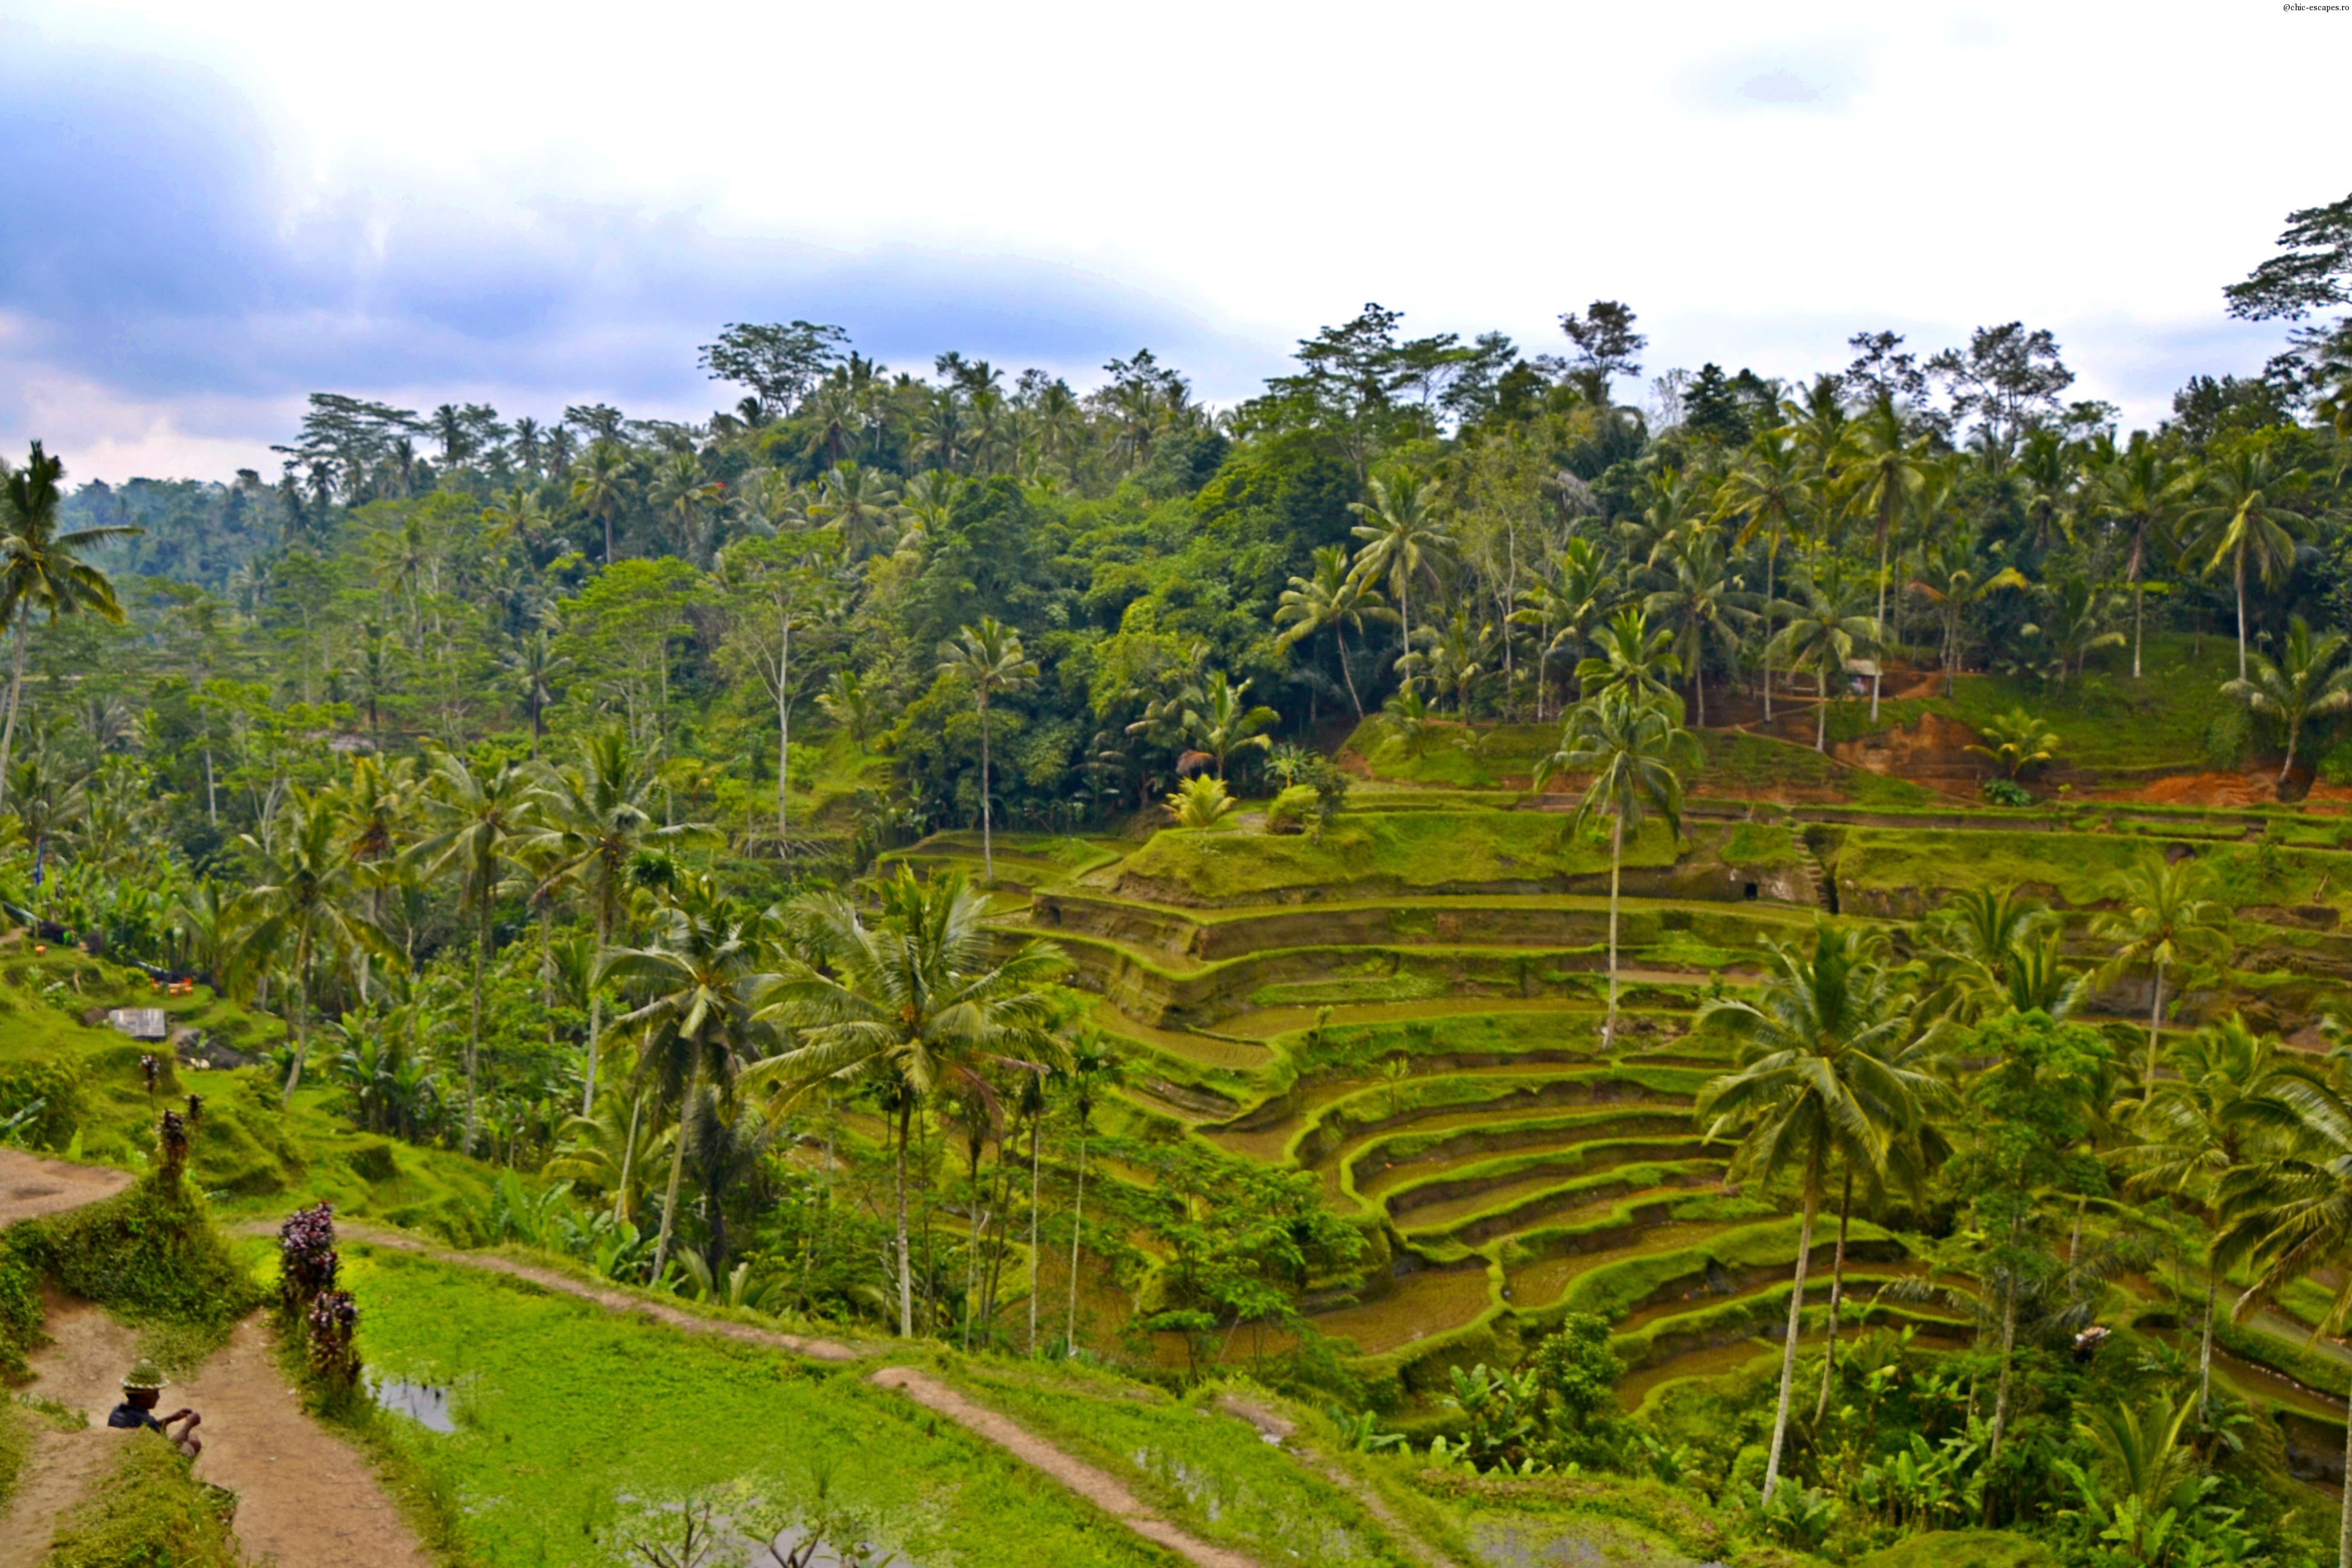 Terasele de orez de la Tegalalang